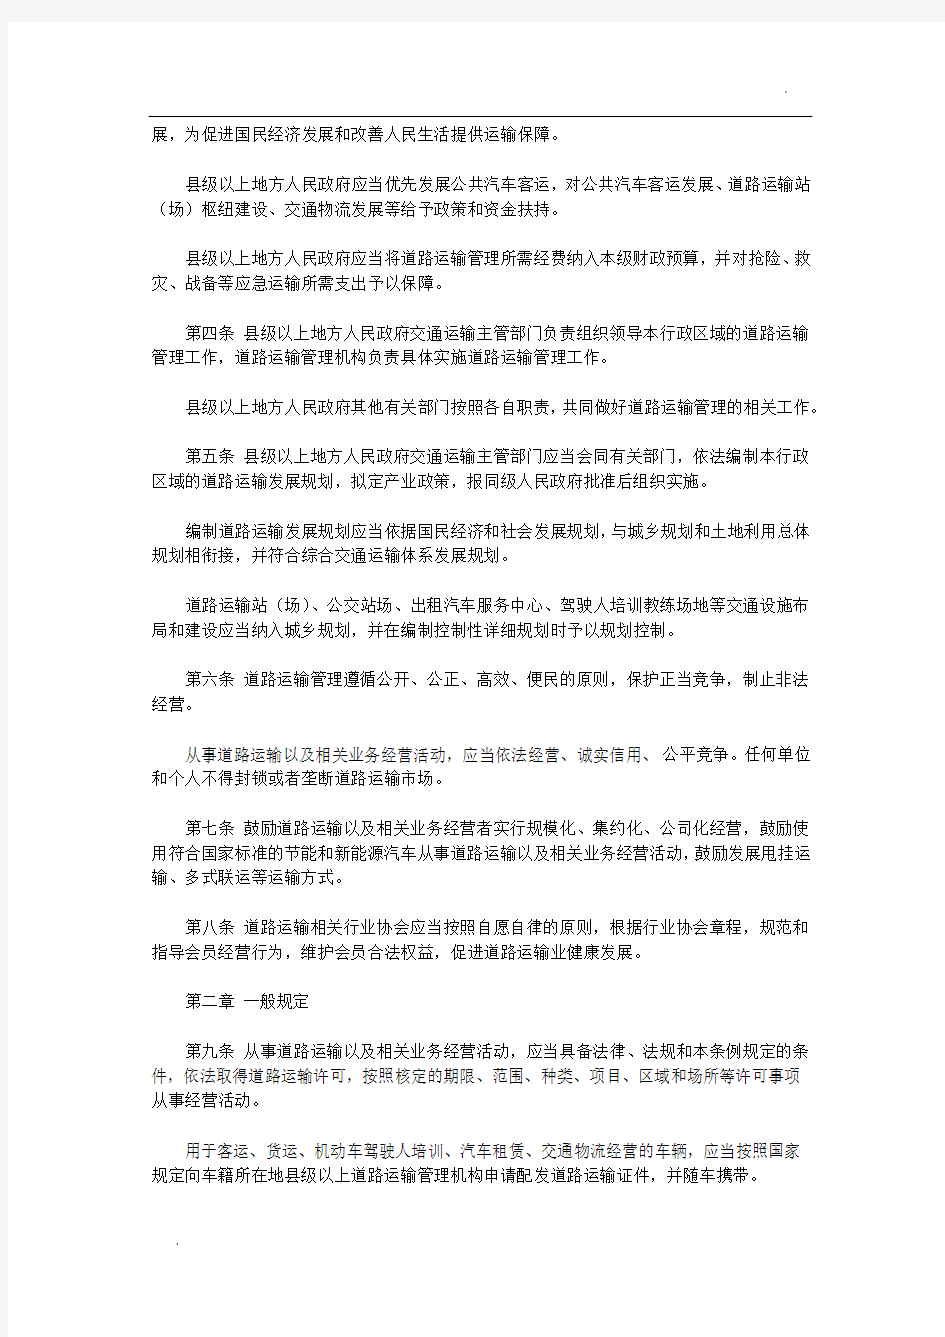 关于江苏省道路运输条例(2017版)